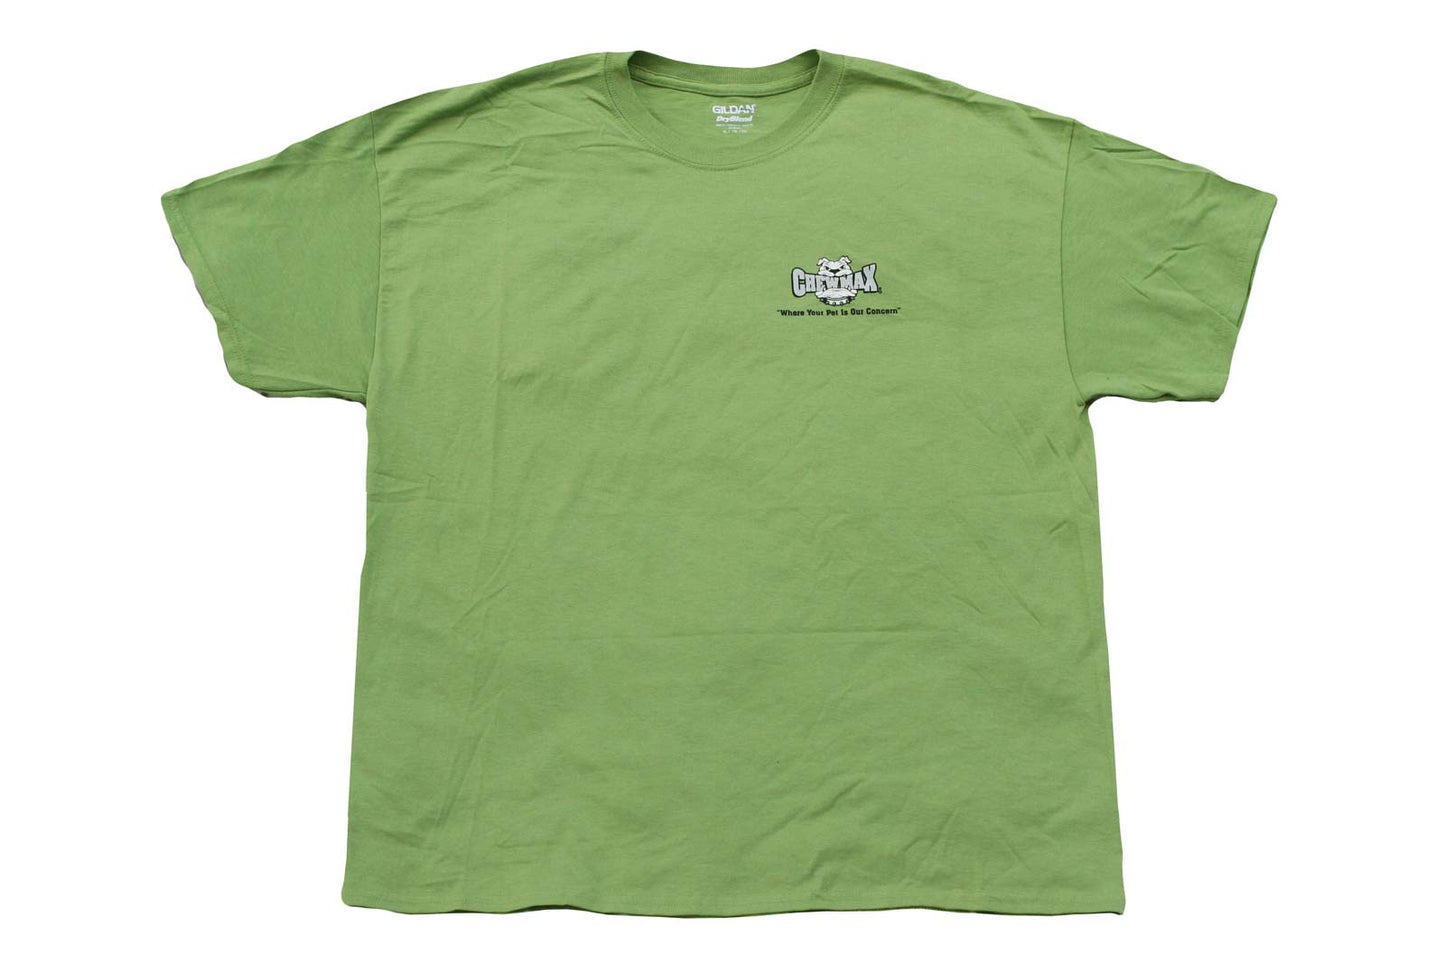 ChewMax T-Shirt